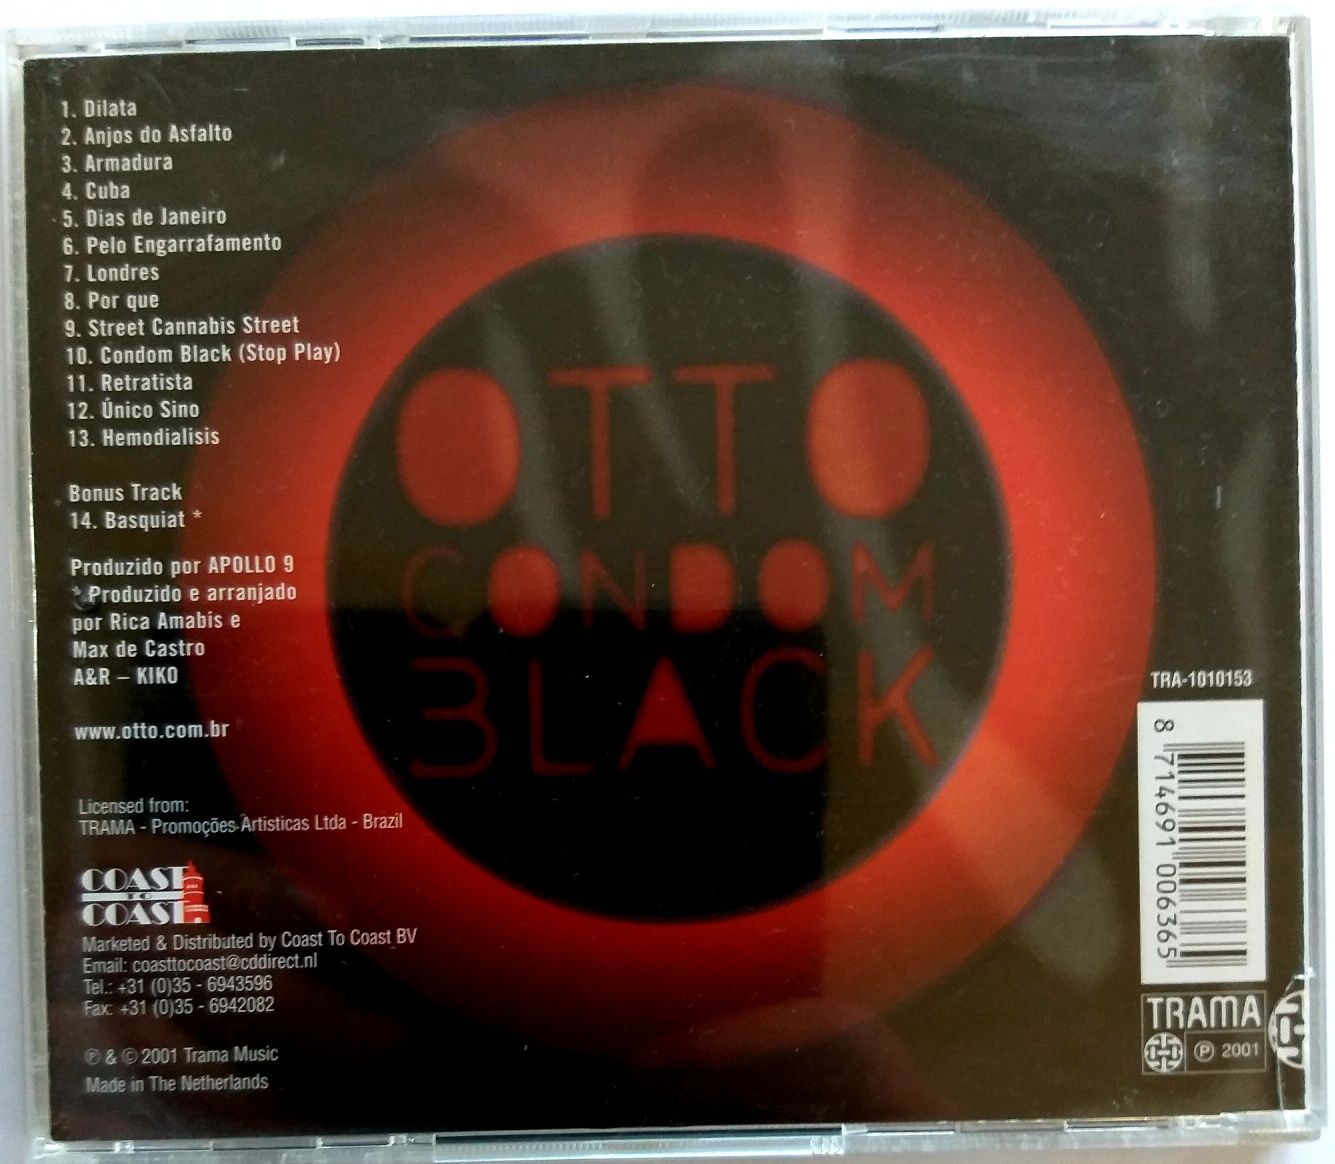 Otto Condom Black 2001r